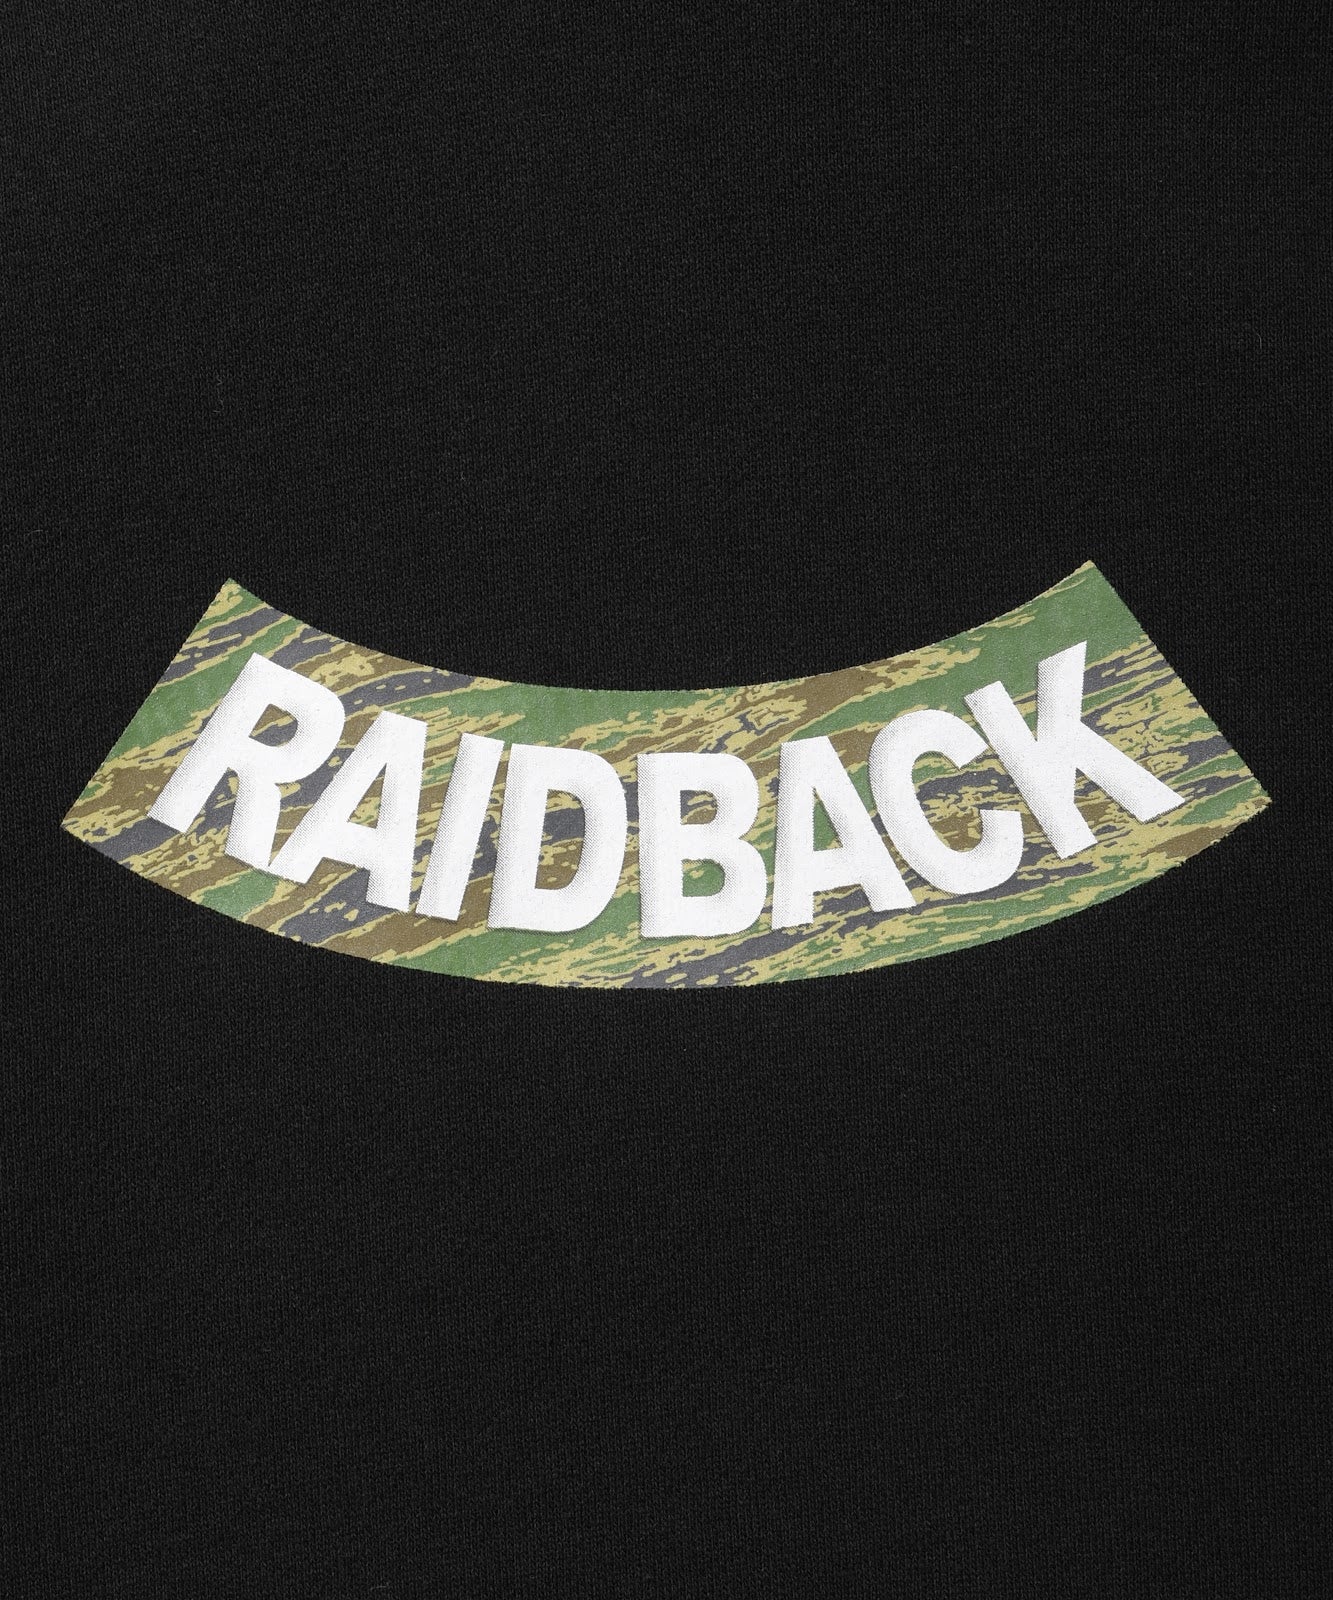 raidback fabric HOODIE